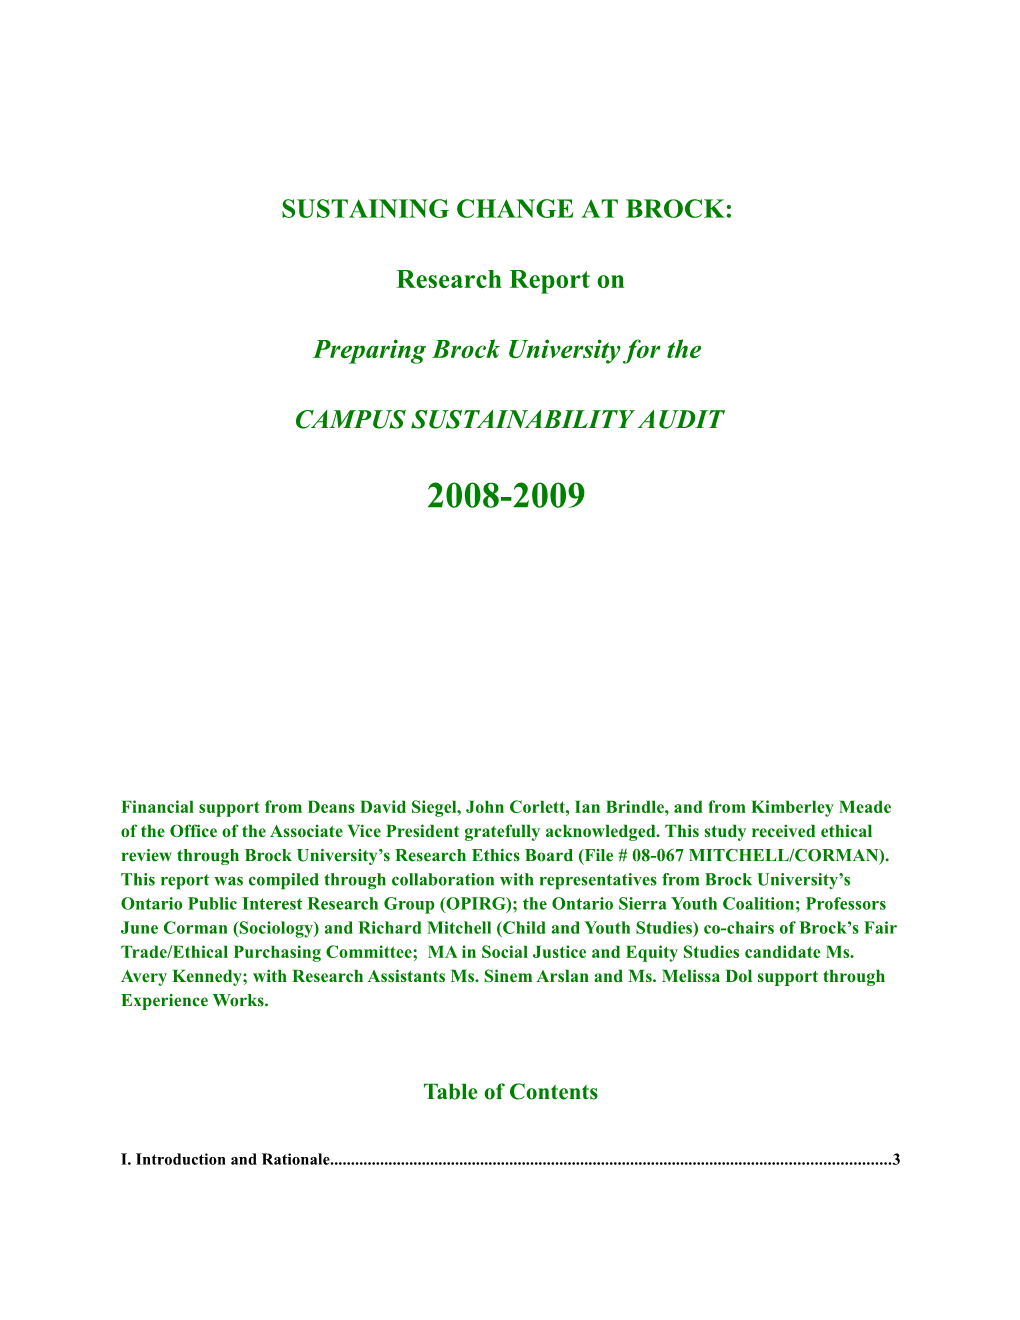 Sustaining Change at Brock